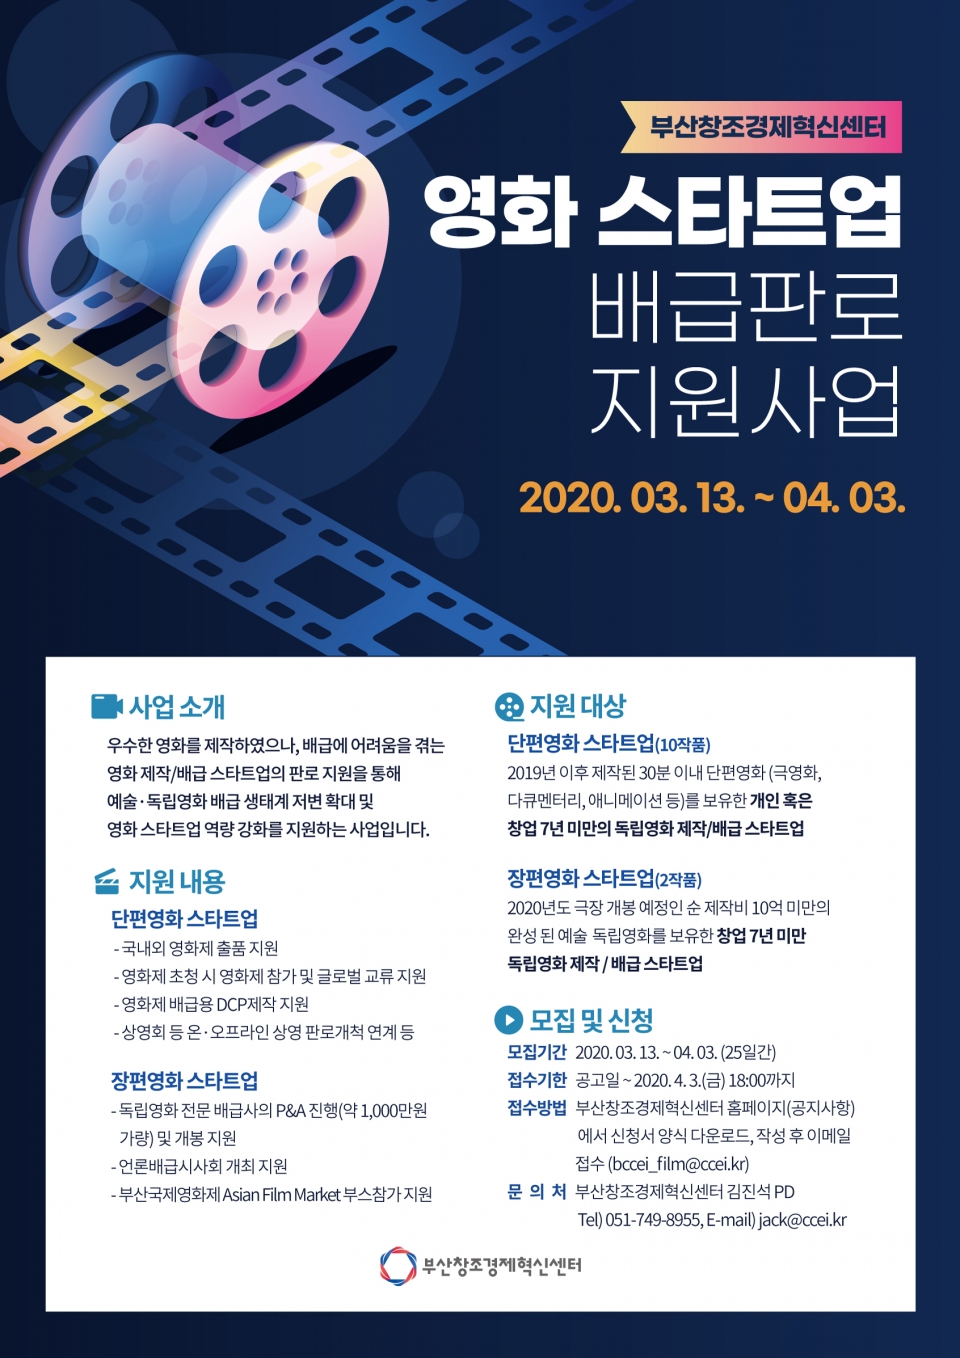 ‘영화 스타트업 배급 판로 지원 사업’ 포스터. (출처: 부산창조경제혁신센터)